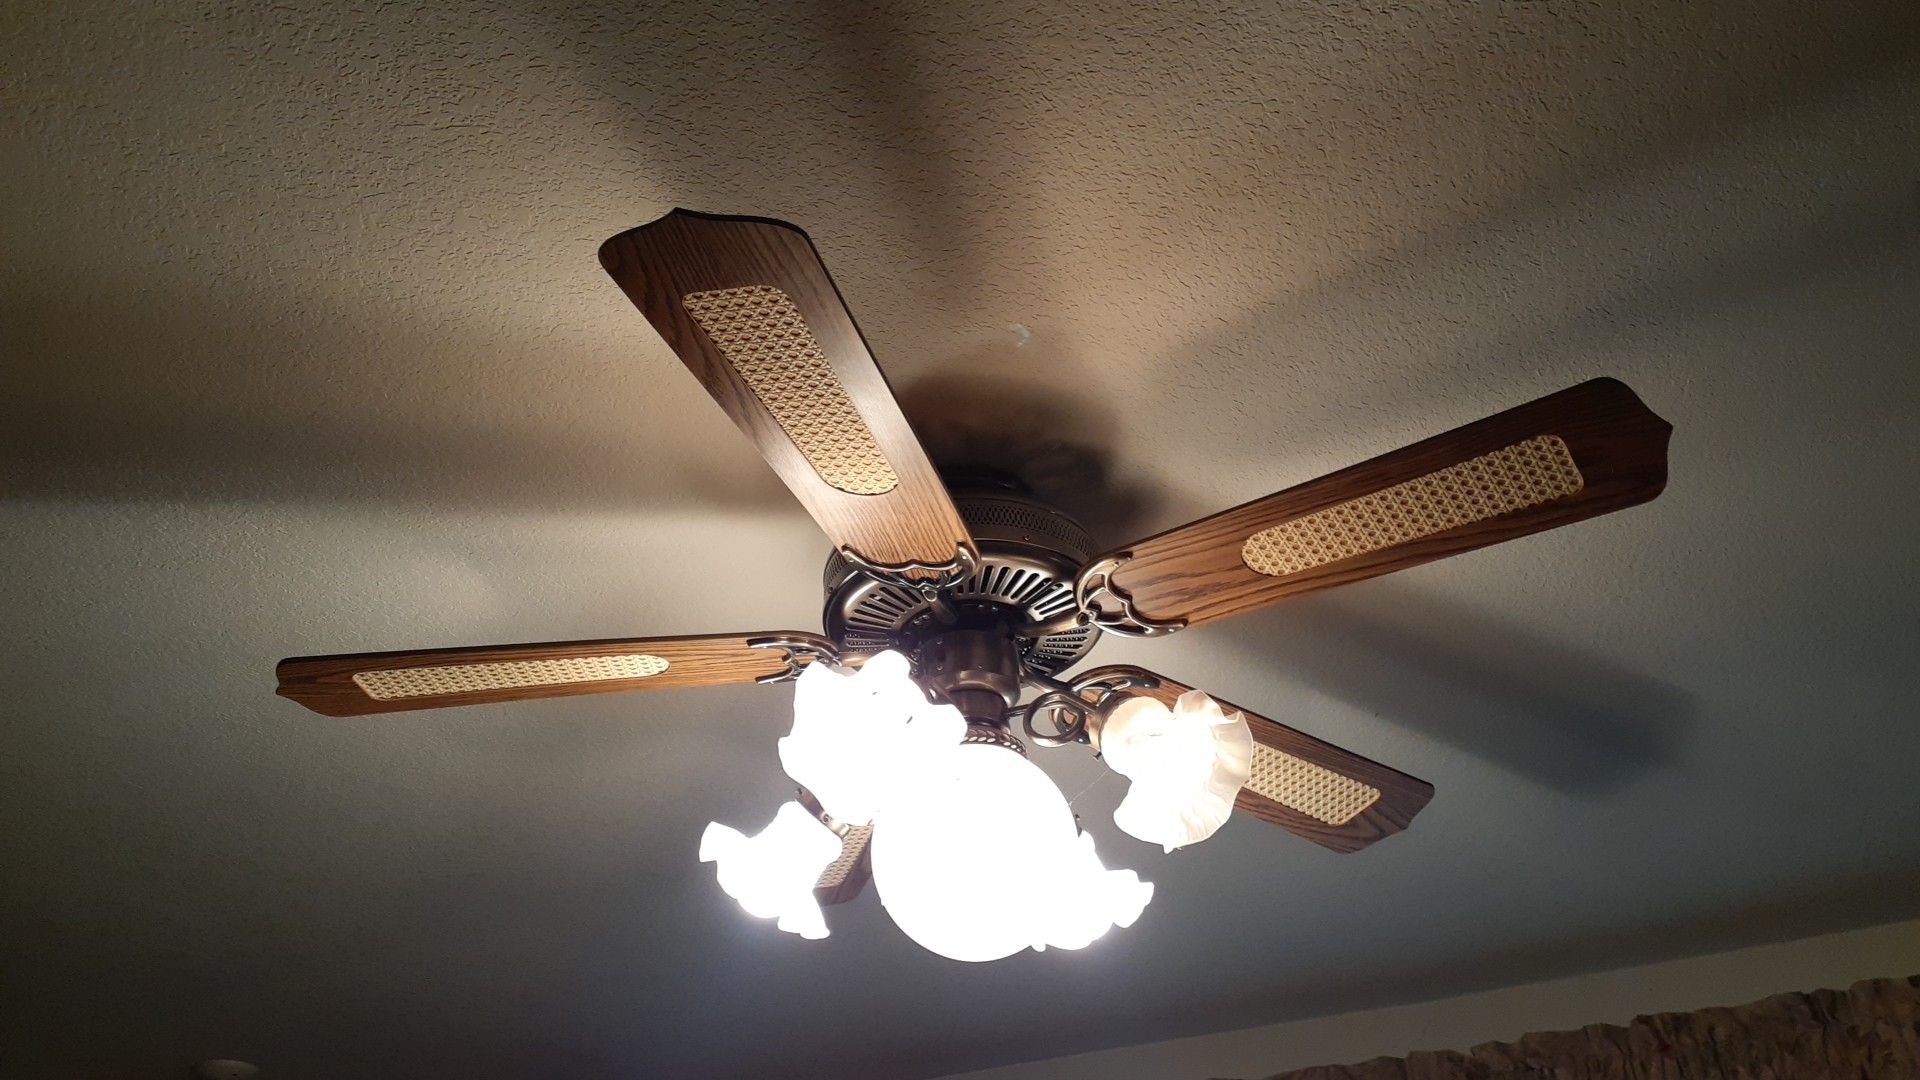 Ceiling fan / Light Fixture